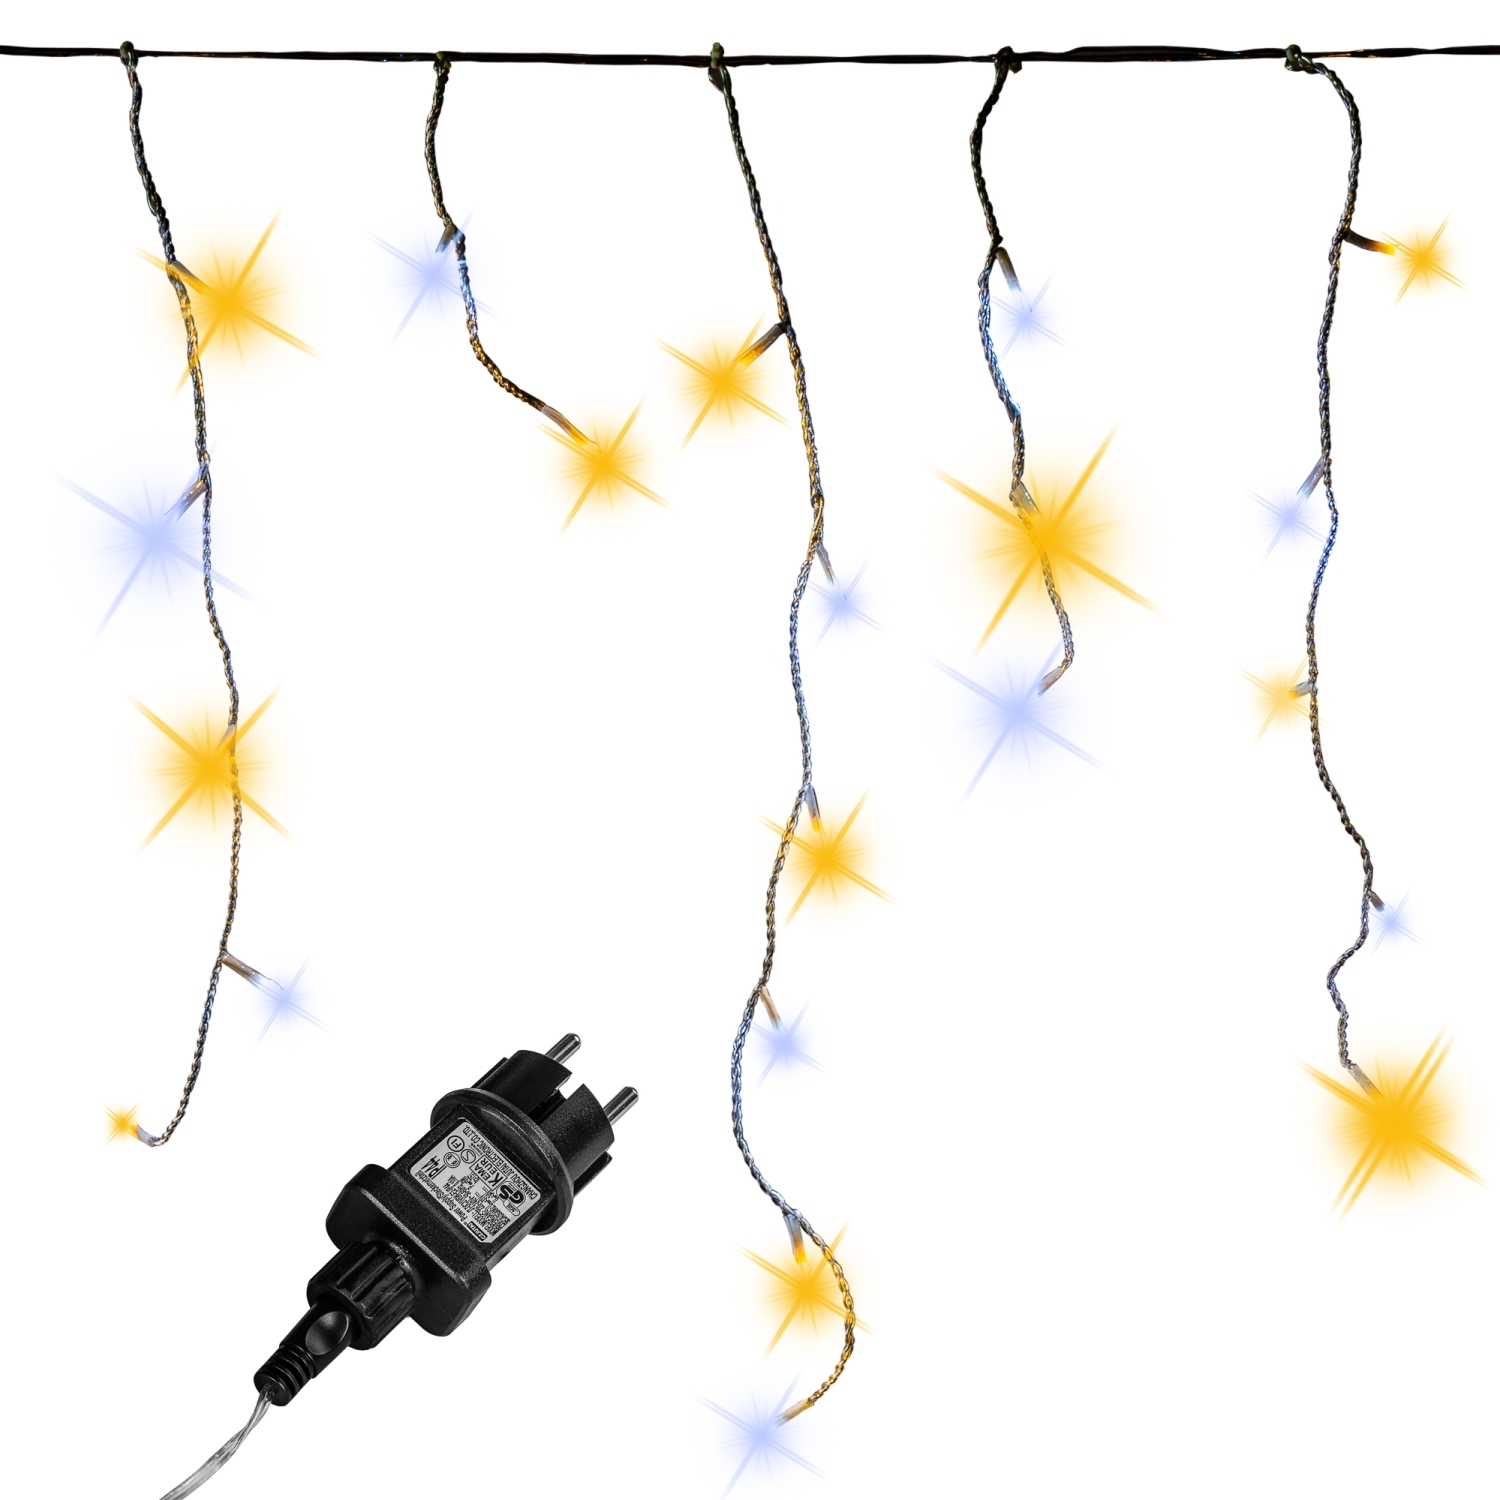 Lichtgordijn – Ijspegelverlichting – Kerstverlichting Gordijn – LED Gordijn – Kerstverlichting – Kerstversiering – Lichtsnoer – Regenlichtketting – Voor Binnen en Buiten – 60 m – Warm koud